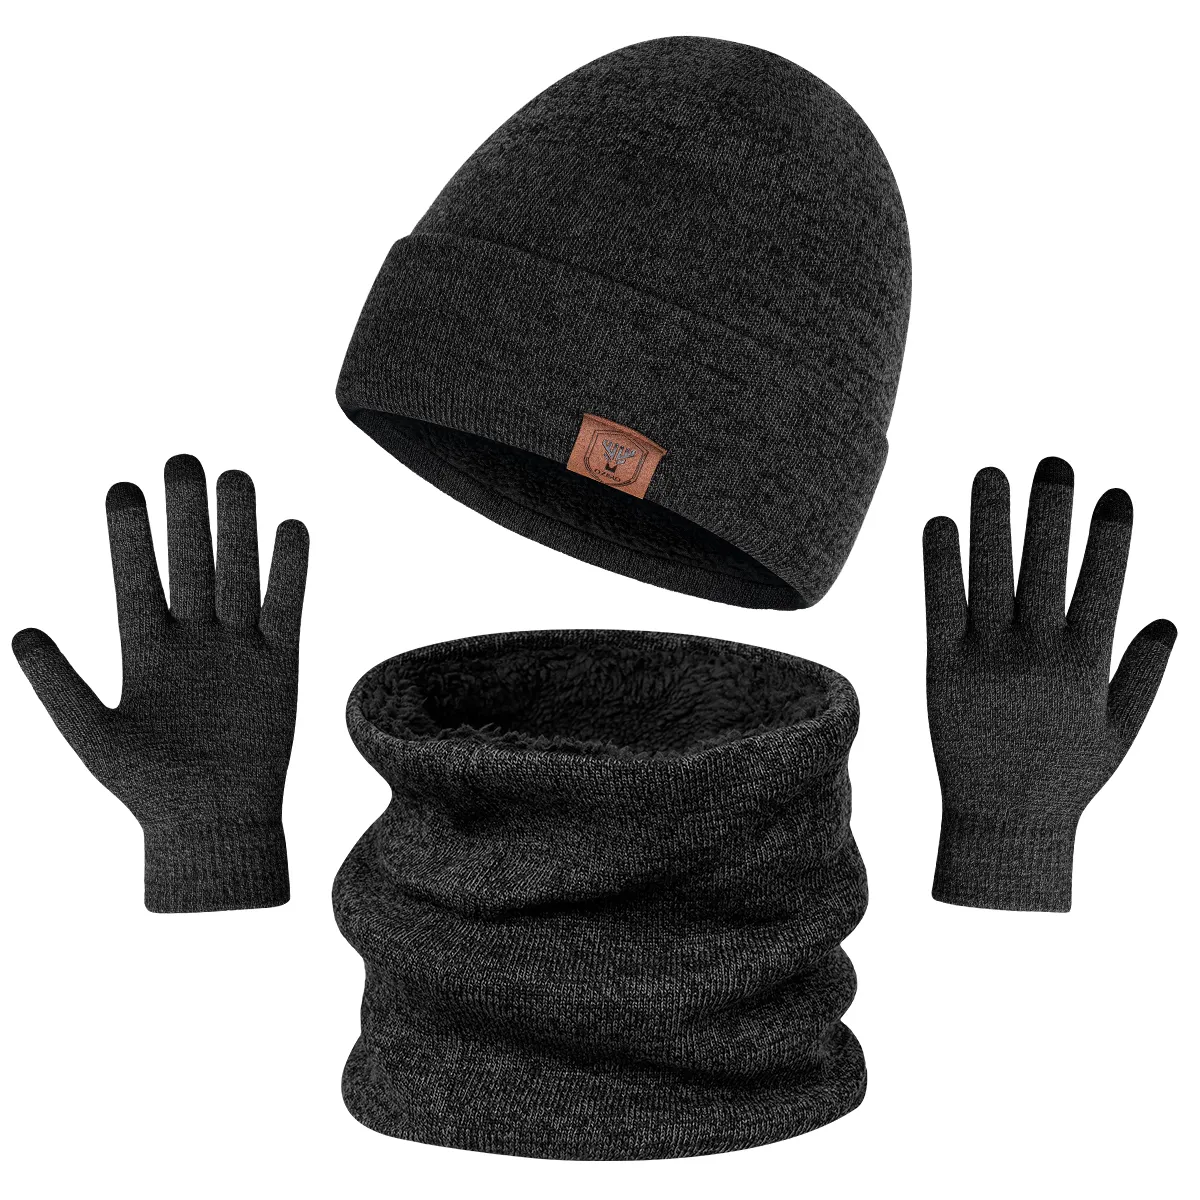 Ozero all'ingrosso caldo inverno spesso berretto a maglia e sciarpa per gli uomini a maglia cappelli e guanti set